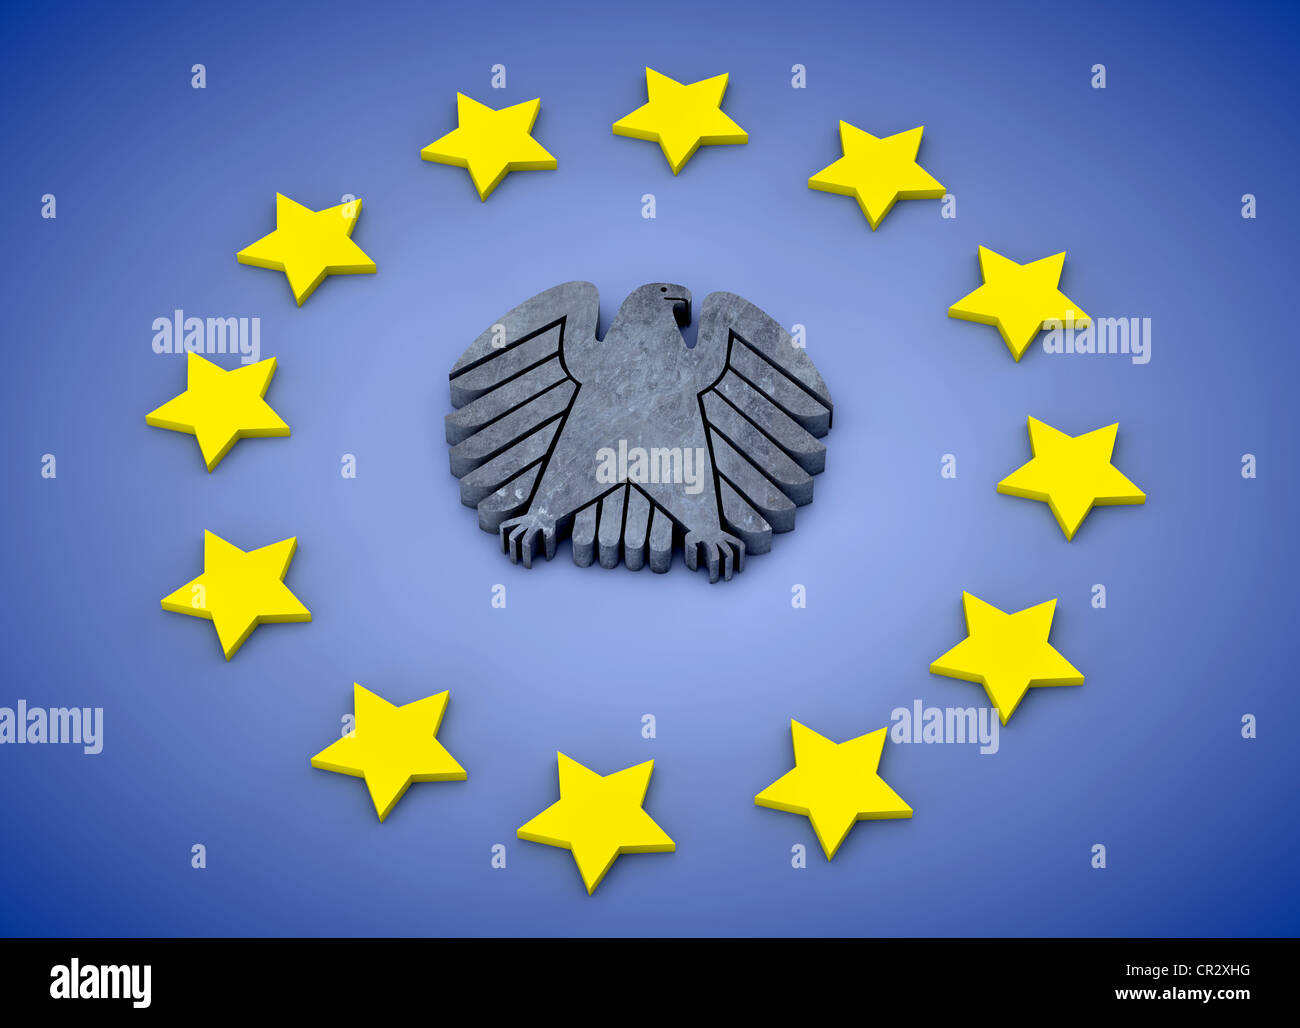 Bandiera europea con le stelle e al centro dell'aquila federale, Unione europea, immagine simbolica per la Germania in Europa, 3D illustrazione Foto Stock